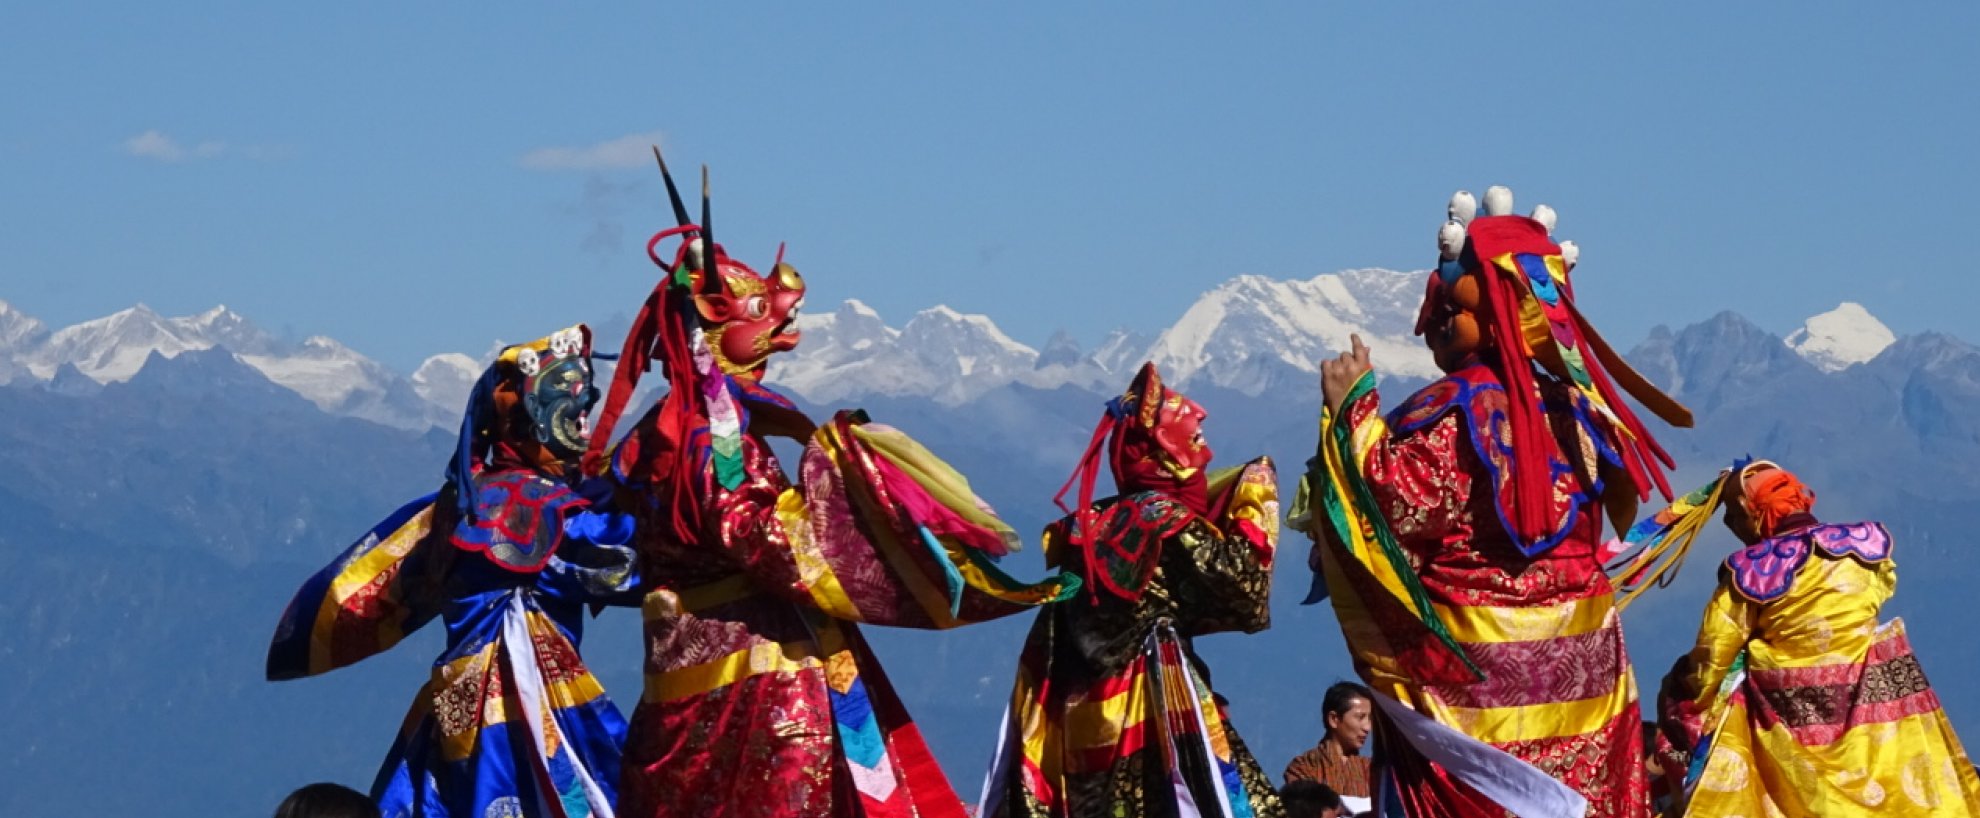 Bhutan Festival Dochu La Pass Druck Wangyel 